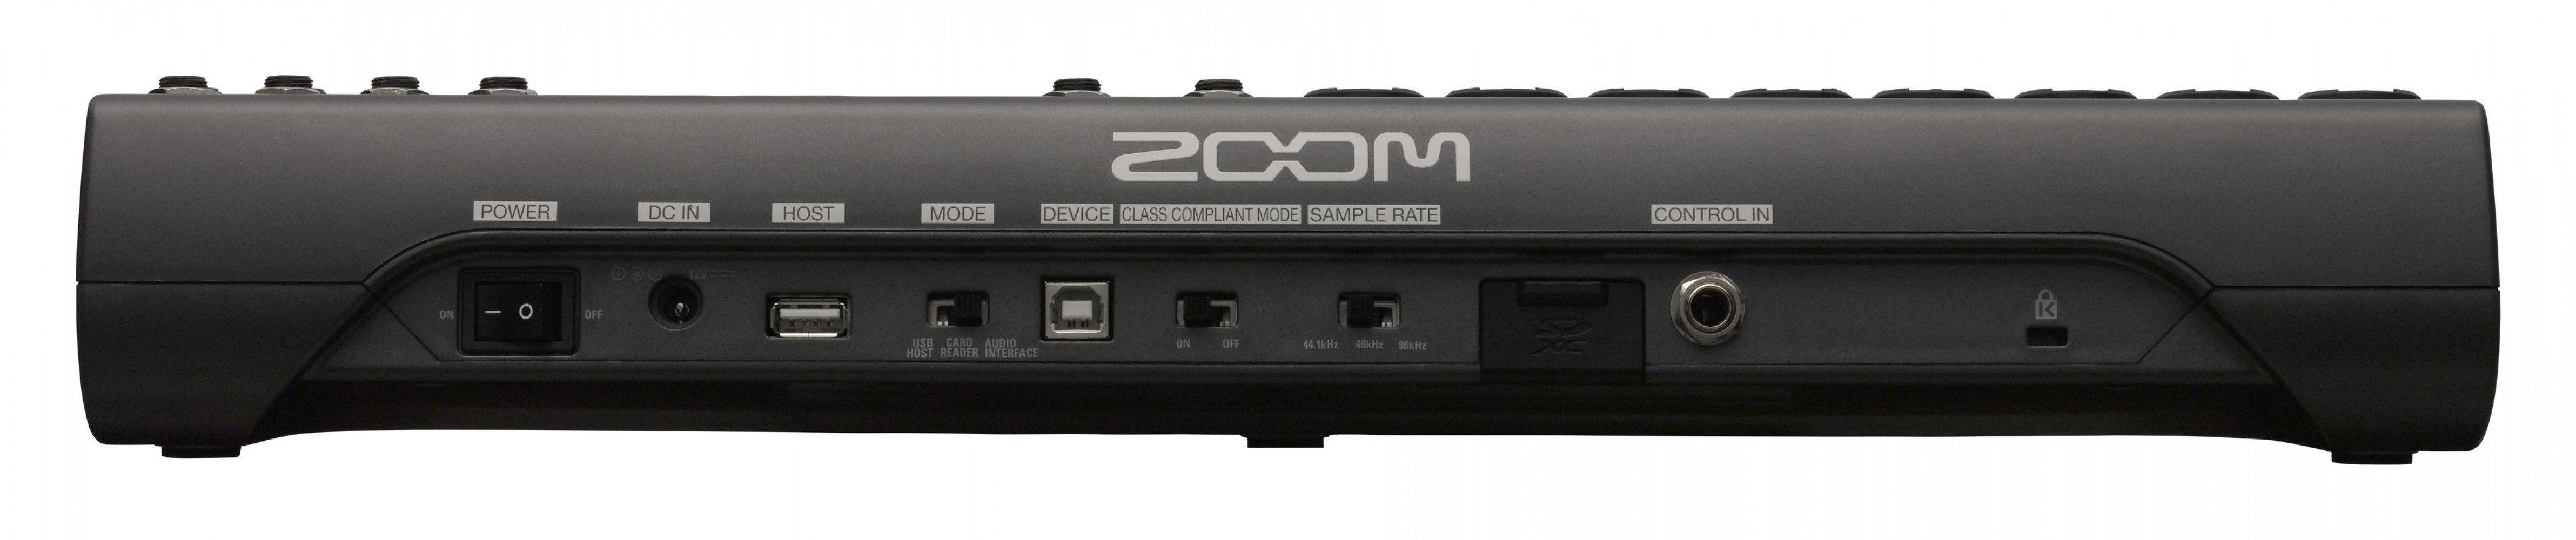 Zoom LiveTrak L-12 12-Channel Digital Mixer and Recorder